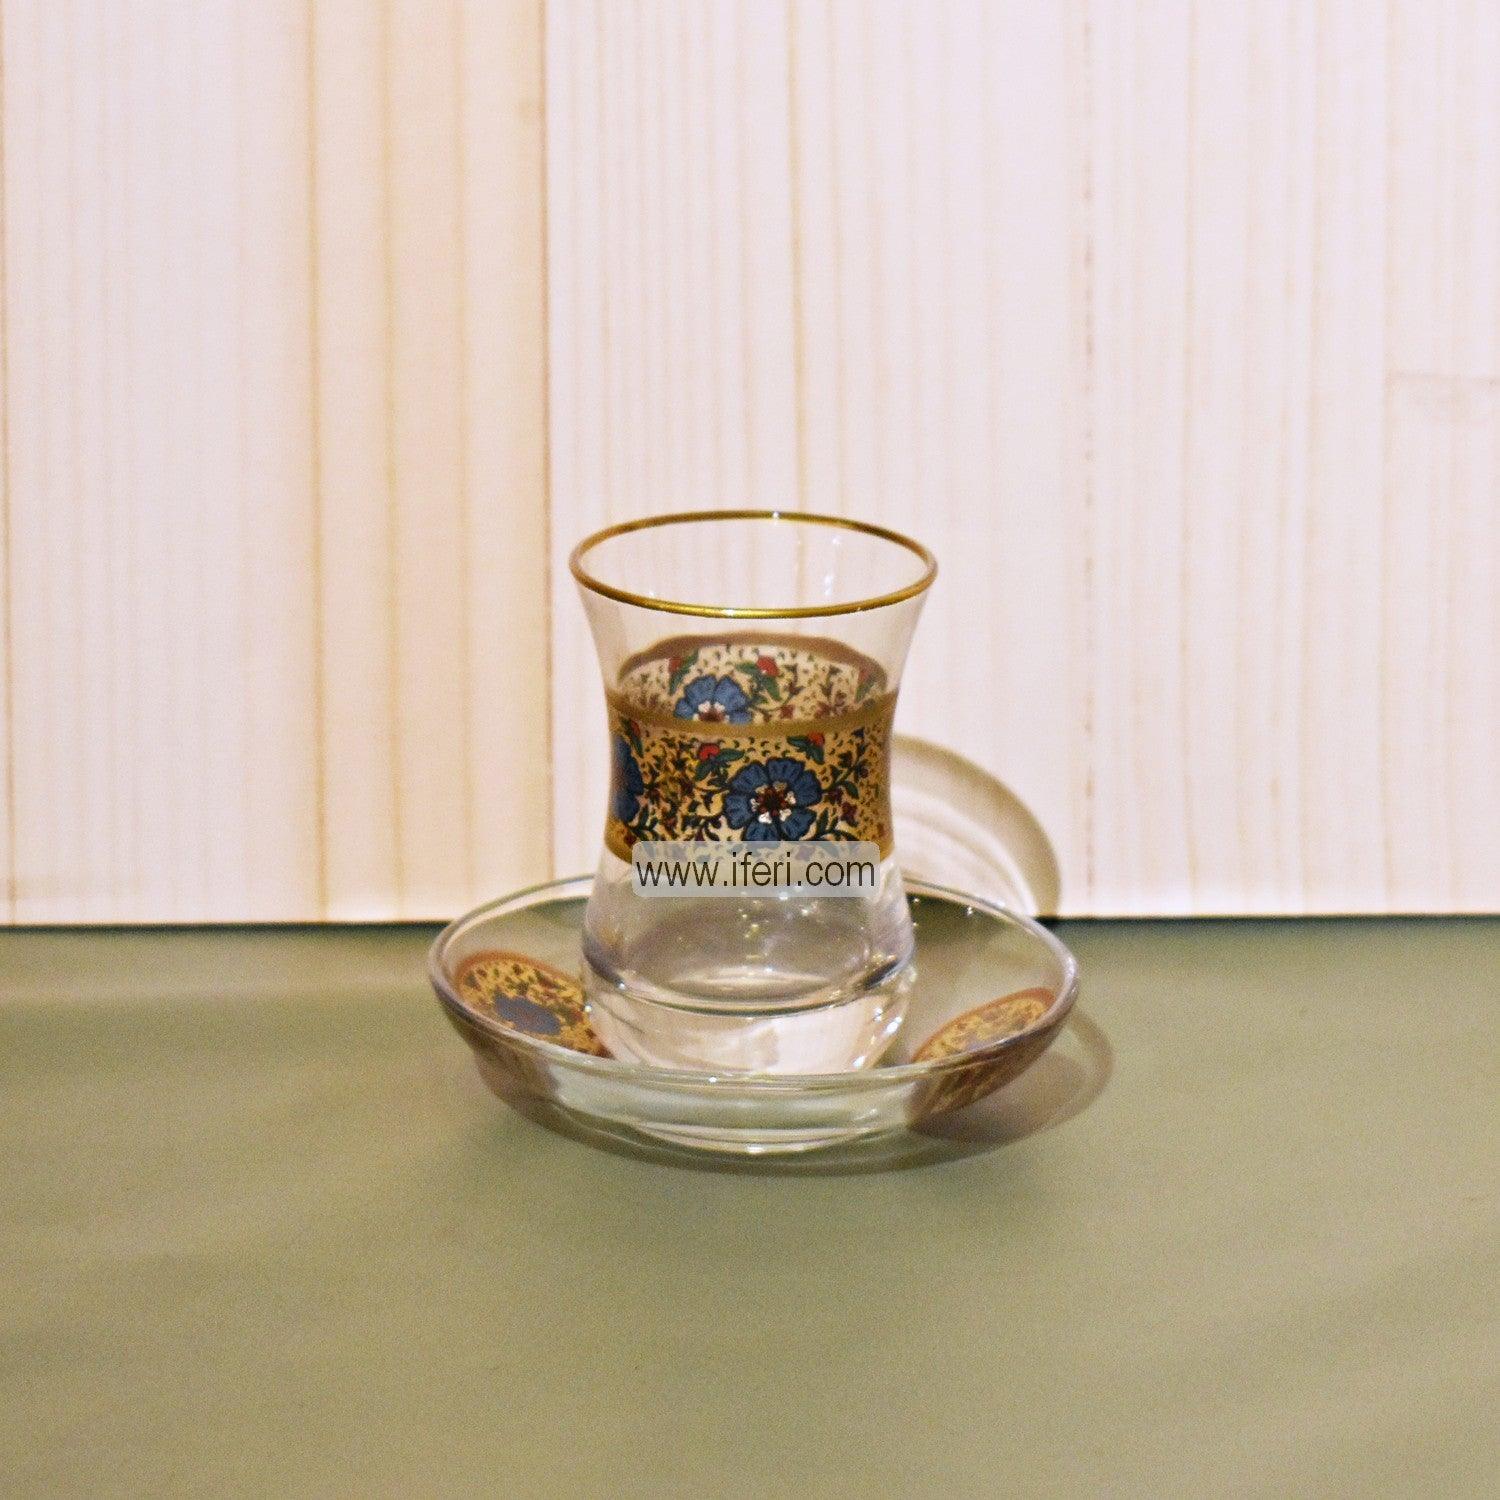 12 Pcs Exclusive Glass Turkish Tea Cup & Saucer Set GA2025 Price in Bangladesh - iferi.com